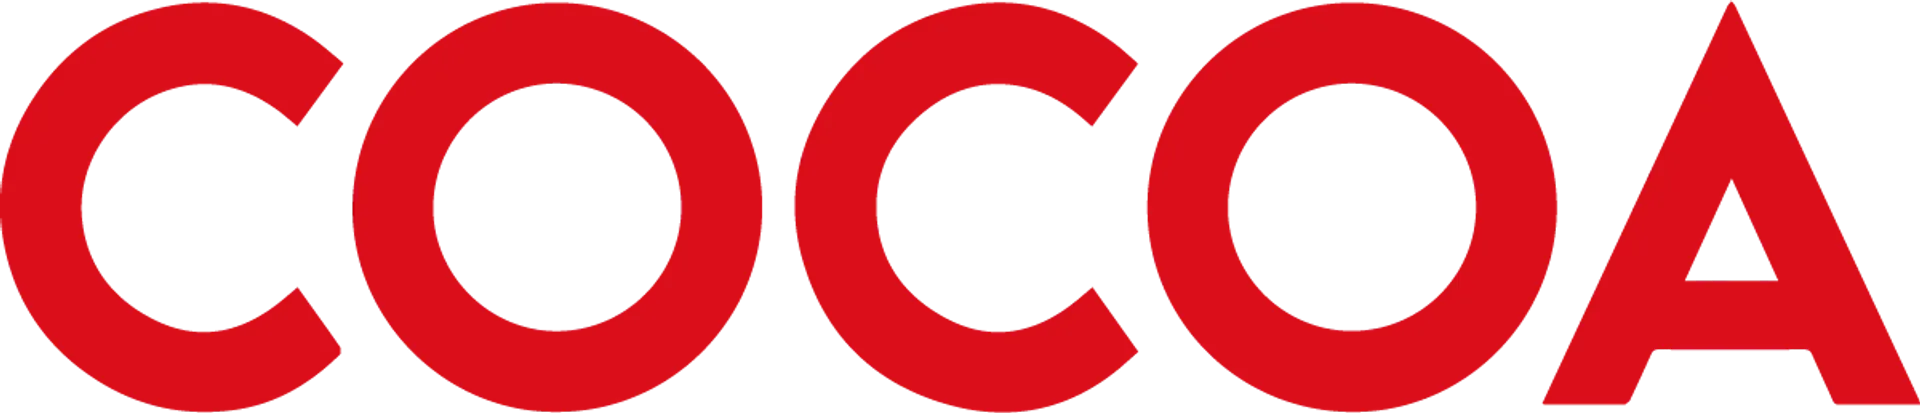 COCOA JEANS logo de catálogo